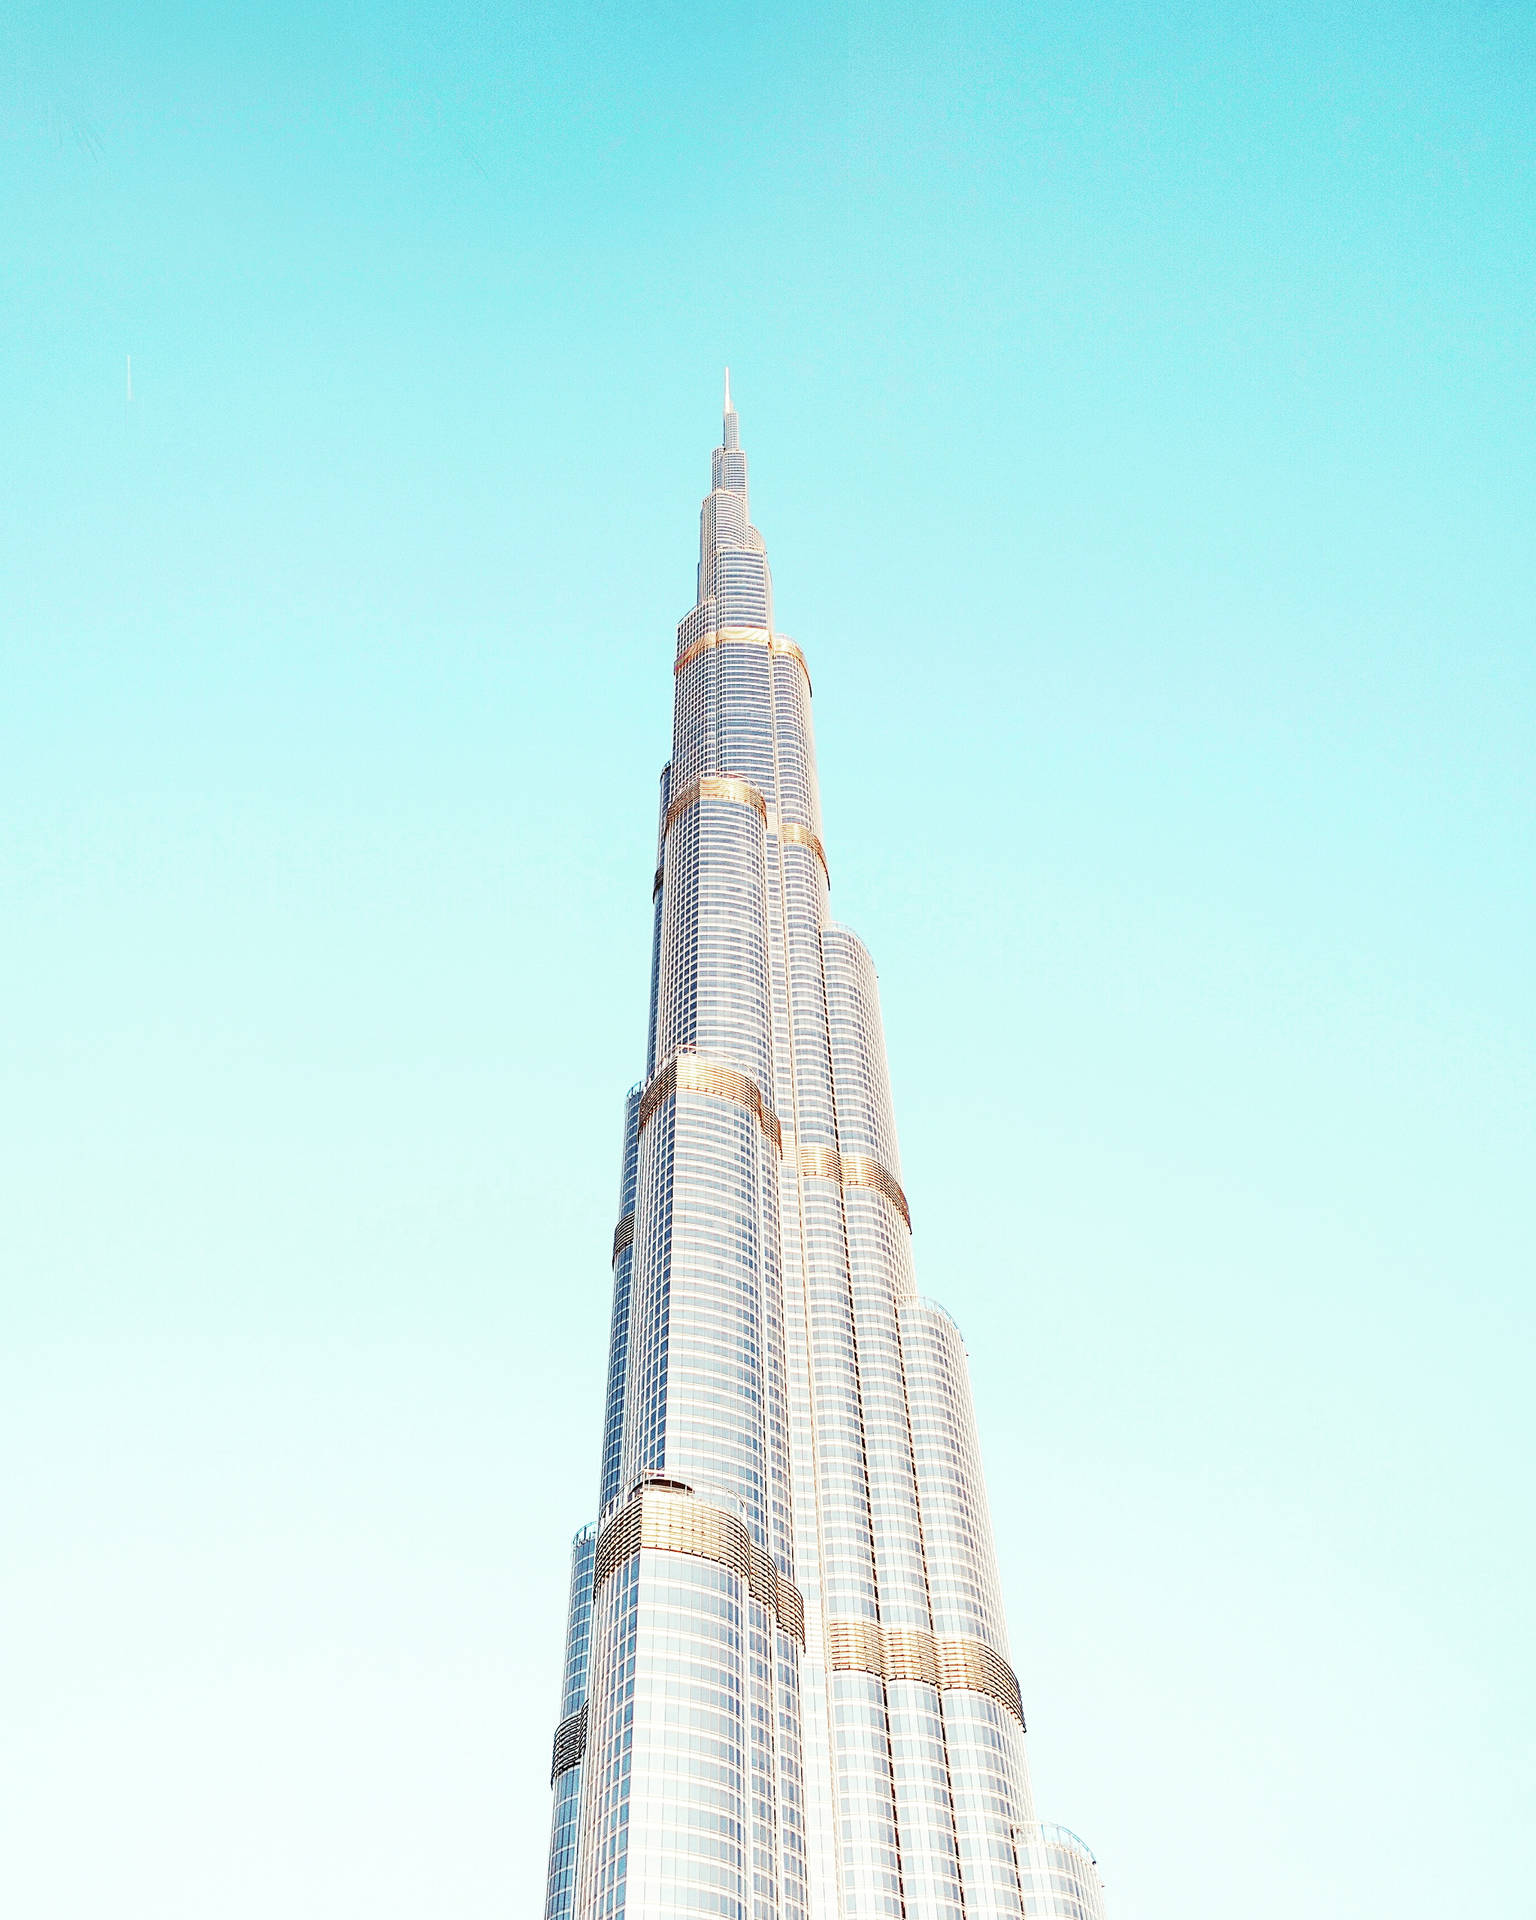 Burj Khalifa Skyscraper